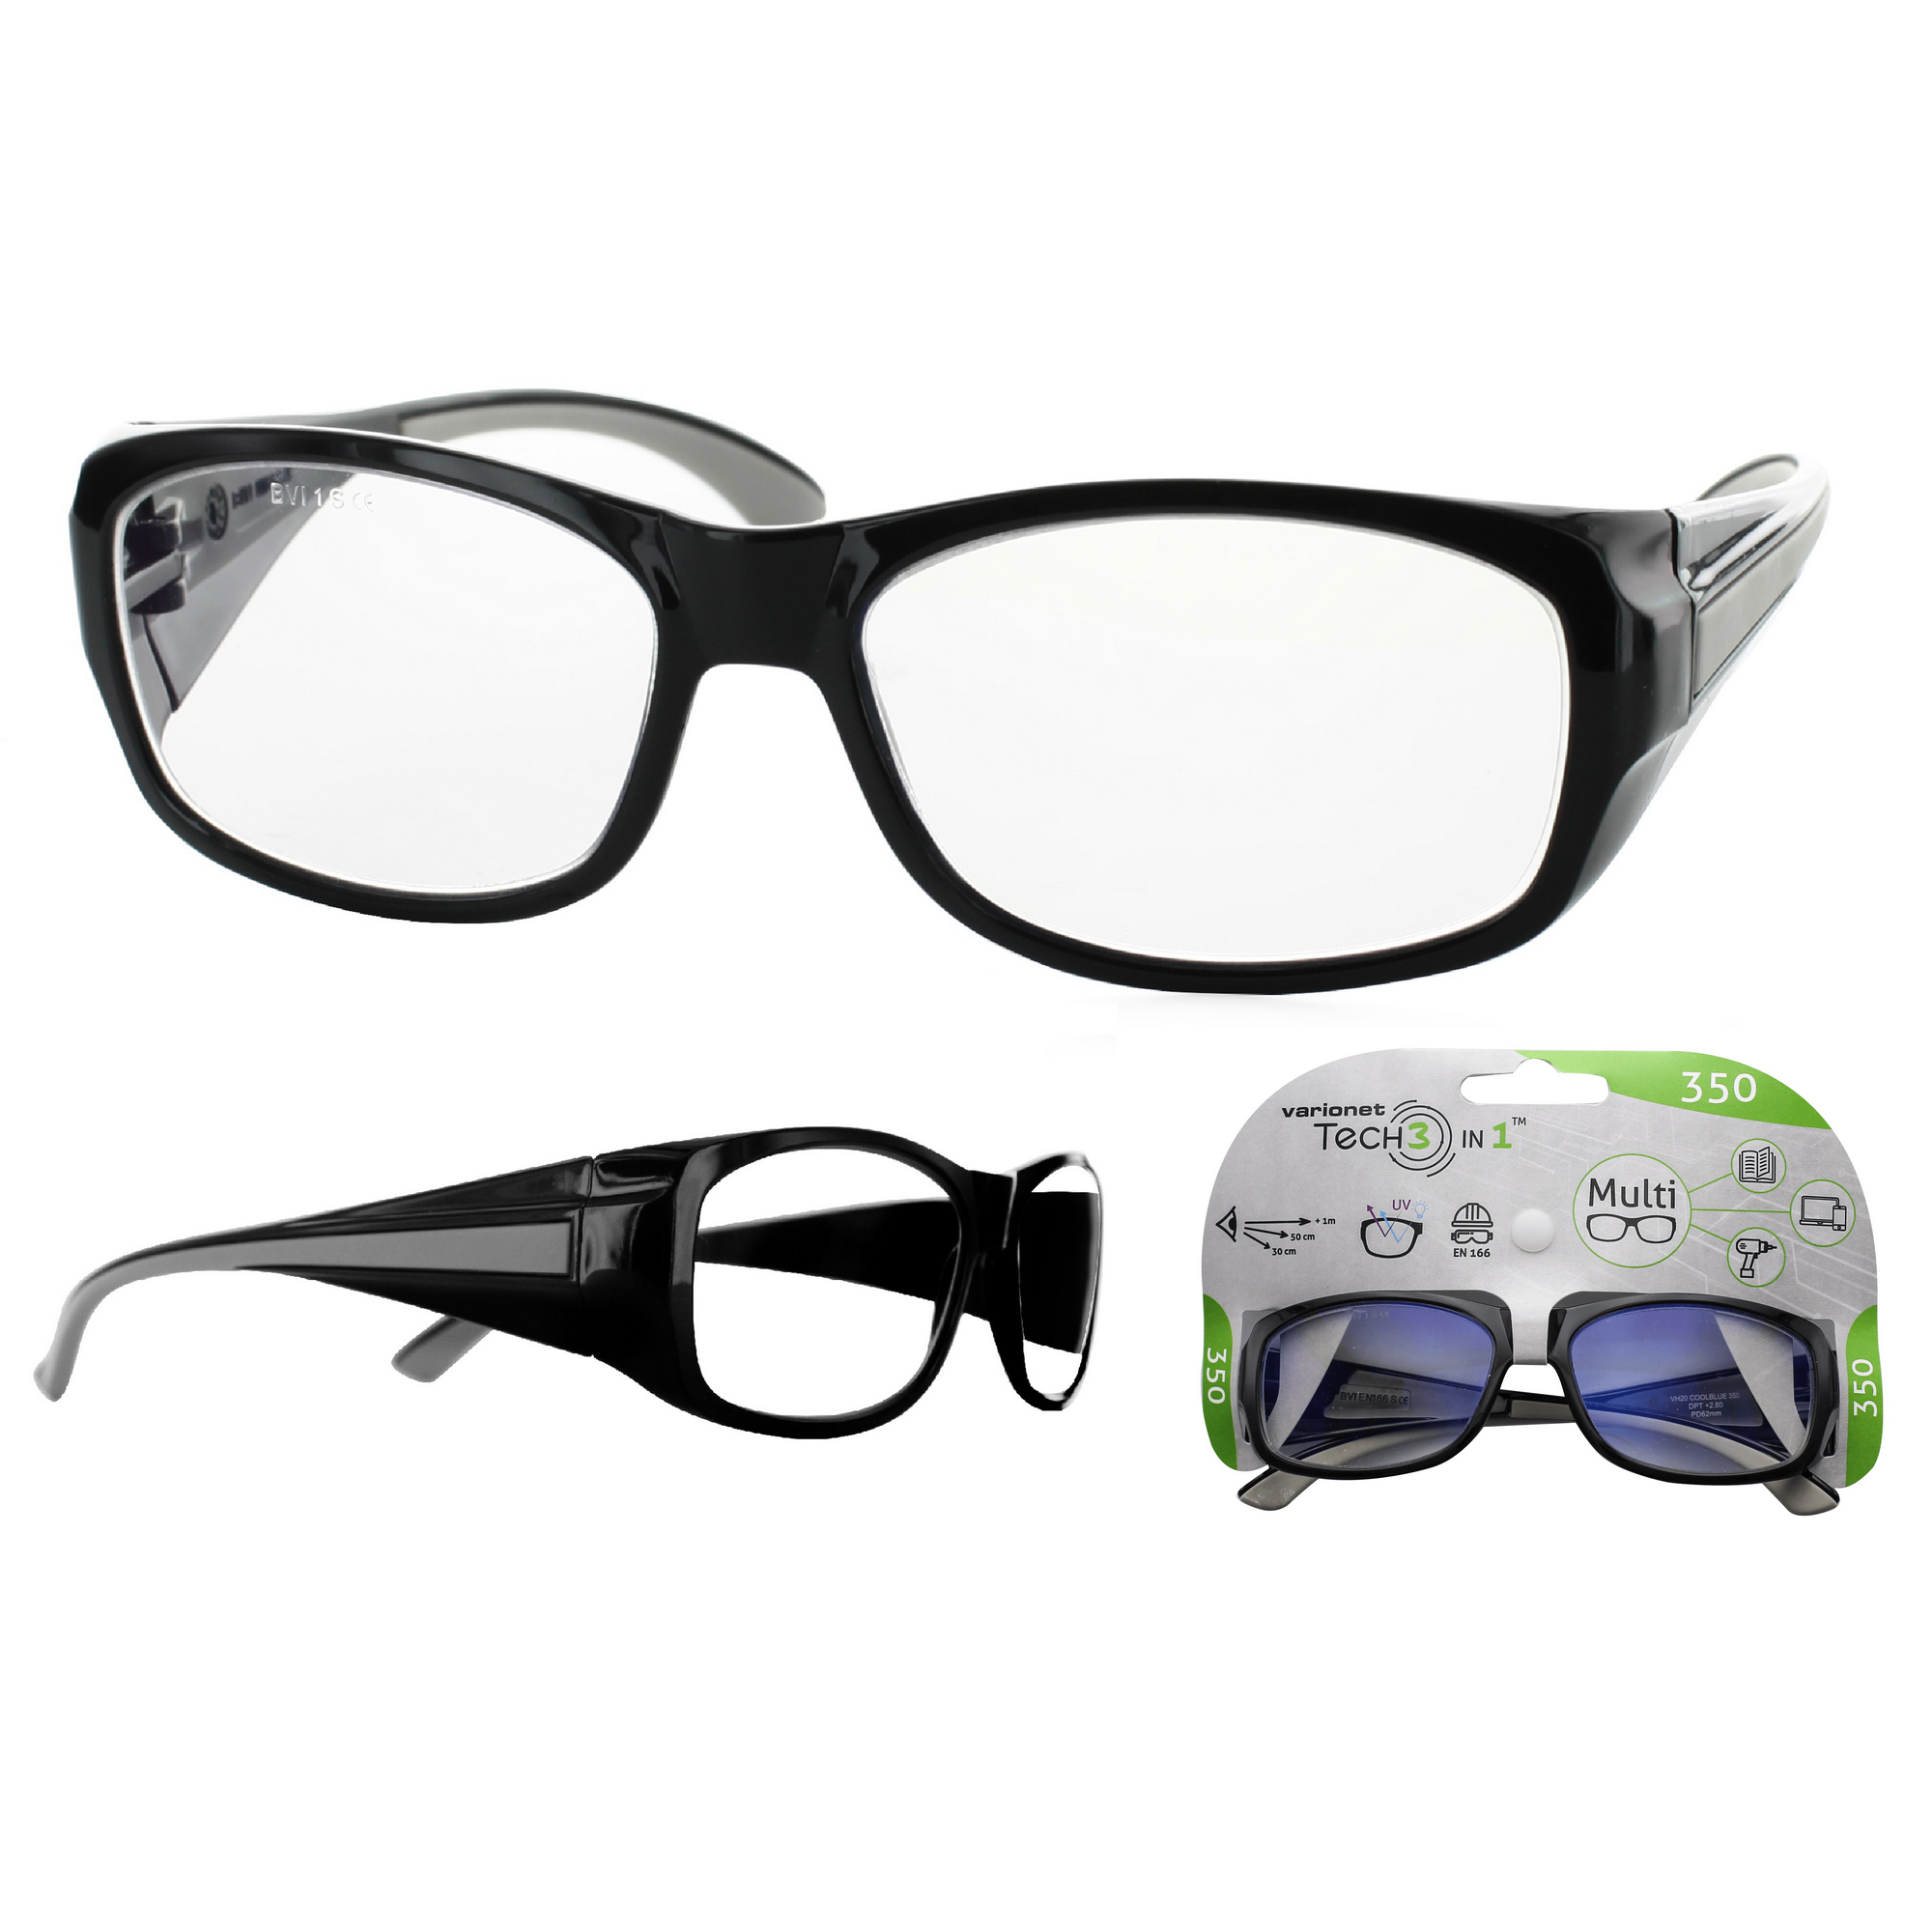 Multidistanz-Schutzbrille 'Tech 3in1 350' schwarz + 3,50 Dioptrien + product picture